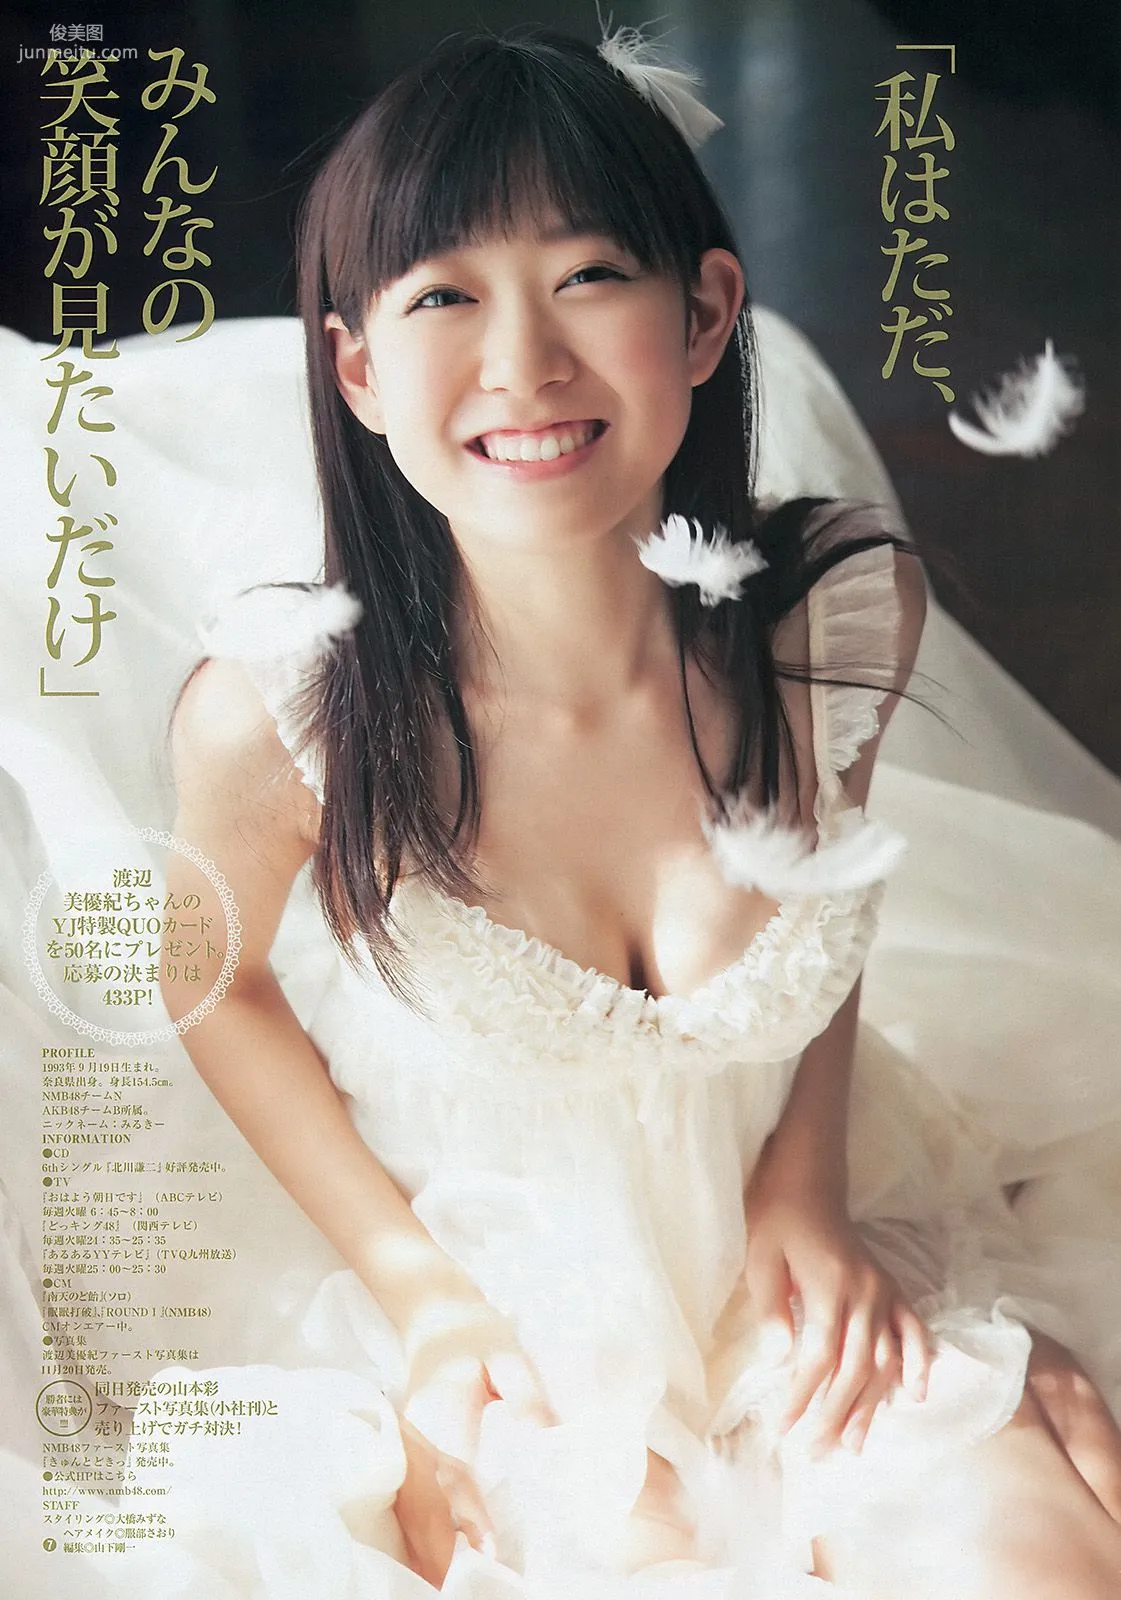 渡辺美優紀 山内鈴蘭 永尾まりや [Weekly Young Jump] 2012年No.50 写真杂志8